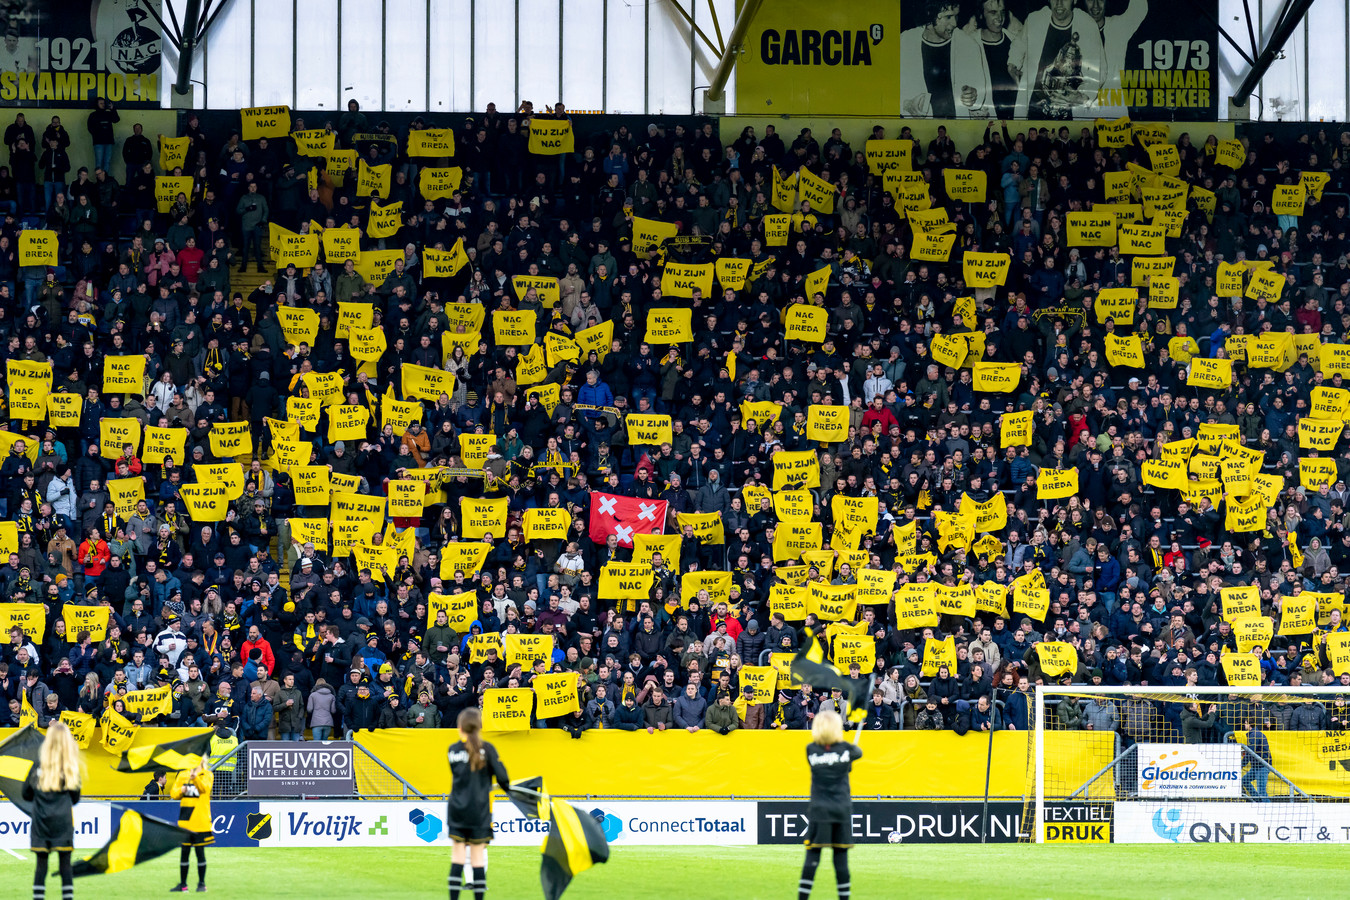 De stem van de NAC-supporter doet ertoe in Breda zoals bleek tijdens in april van dit jaar toen er fel geprotesteerd werd tegen een mogelijke overname door City Football Group.